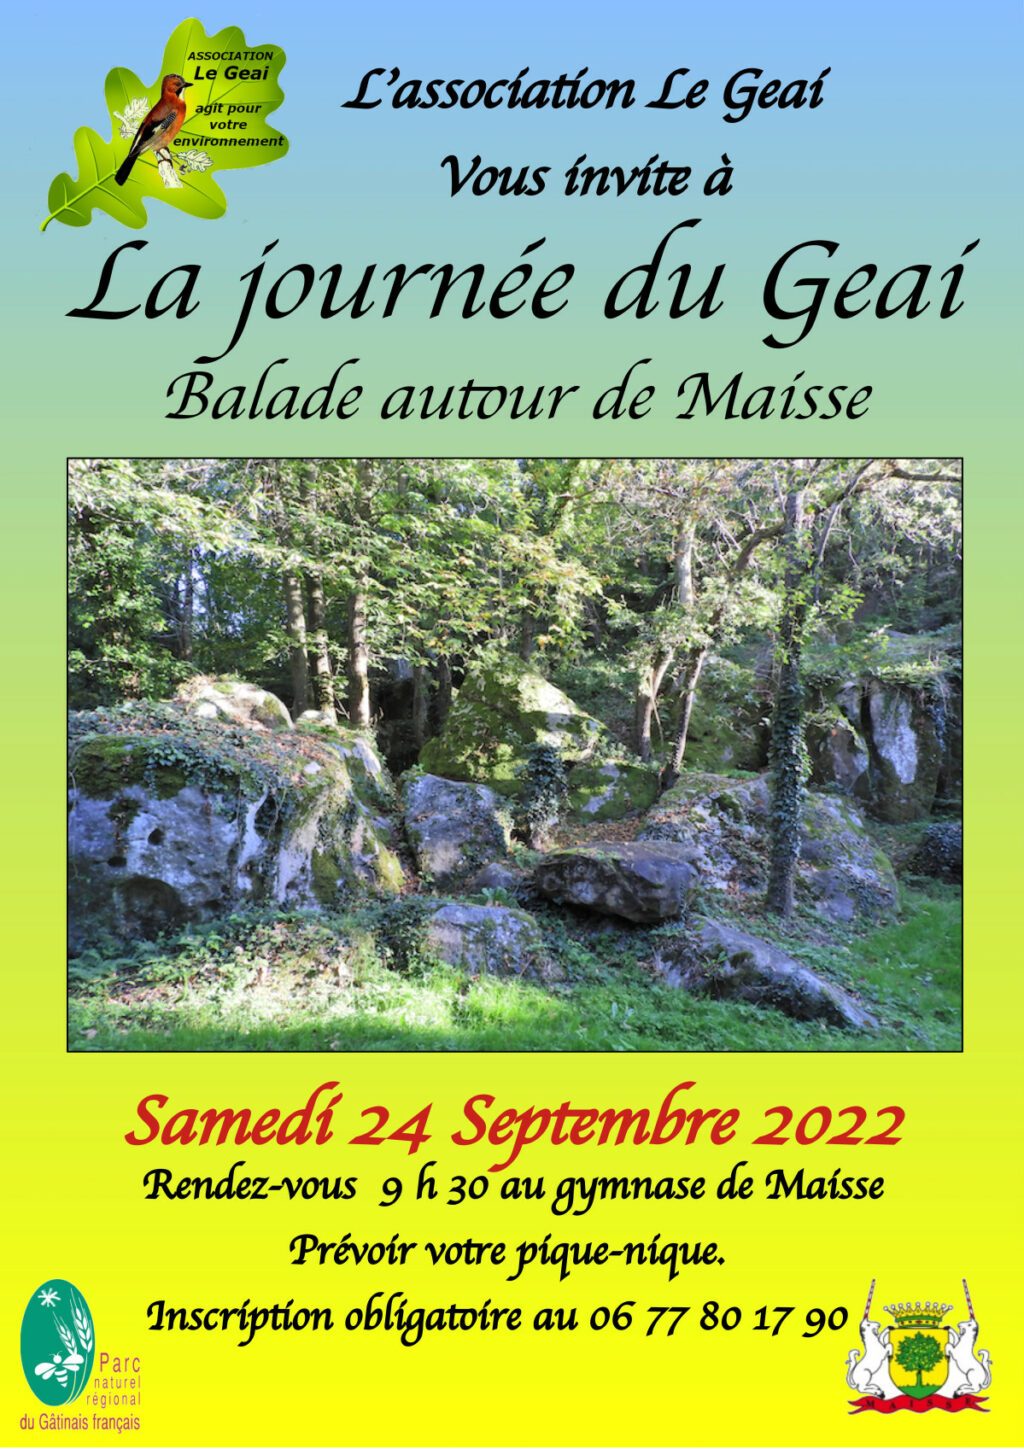 Affiche de la Journée du Geai : balade autour de Maisse le 24 septembre 2022.